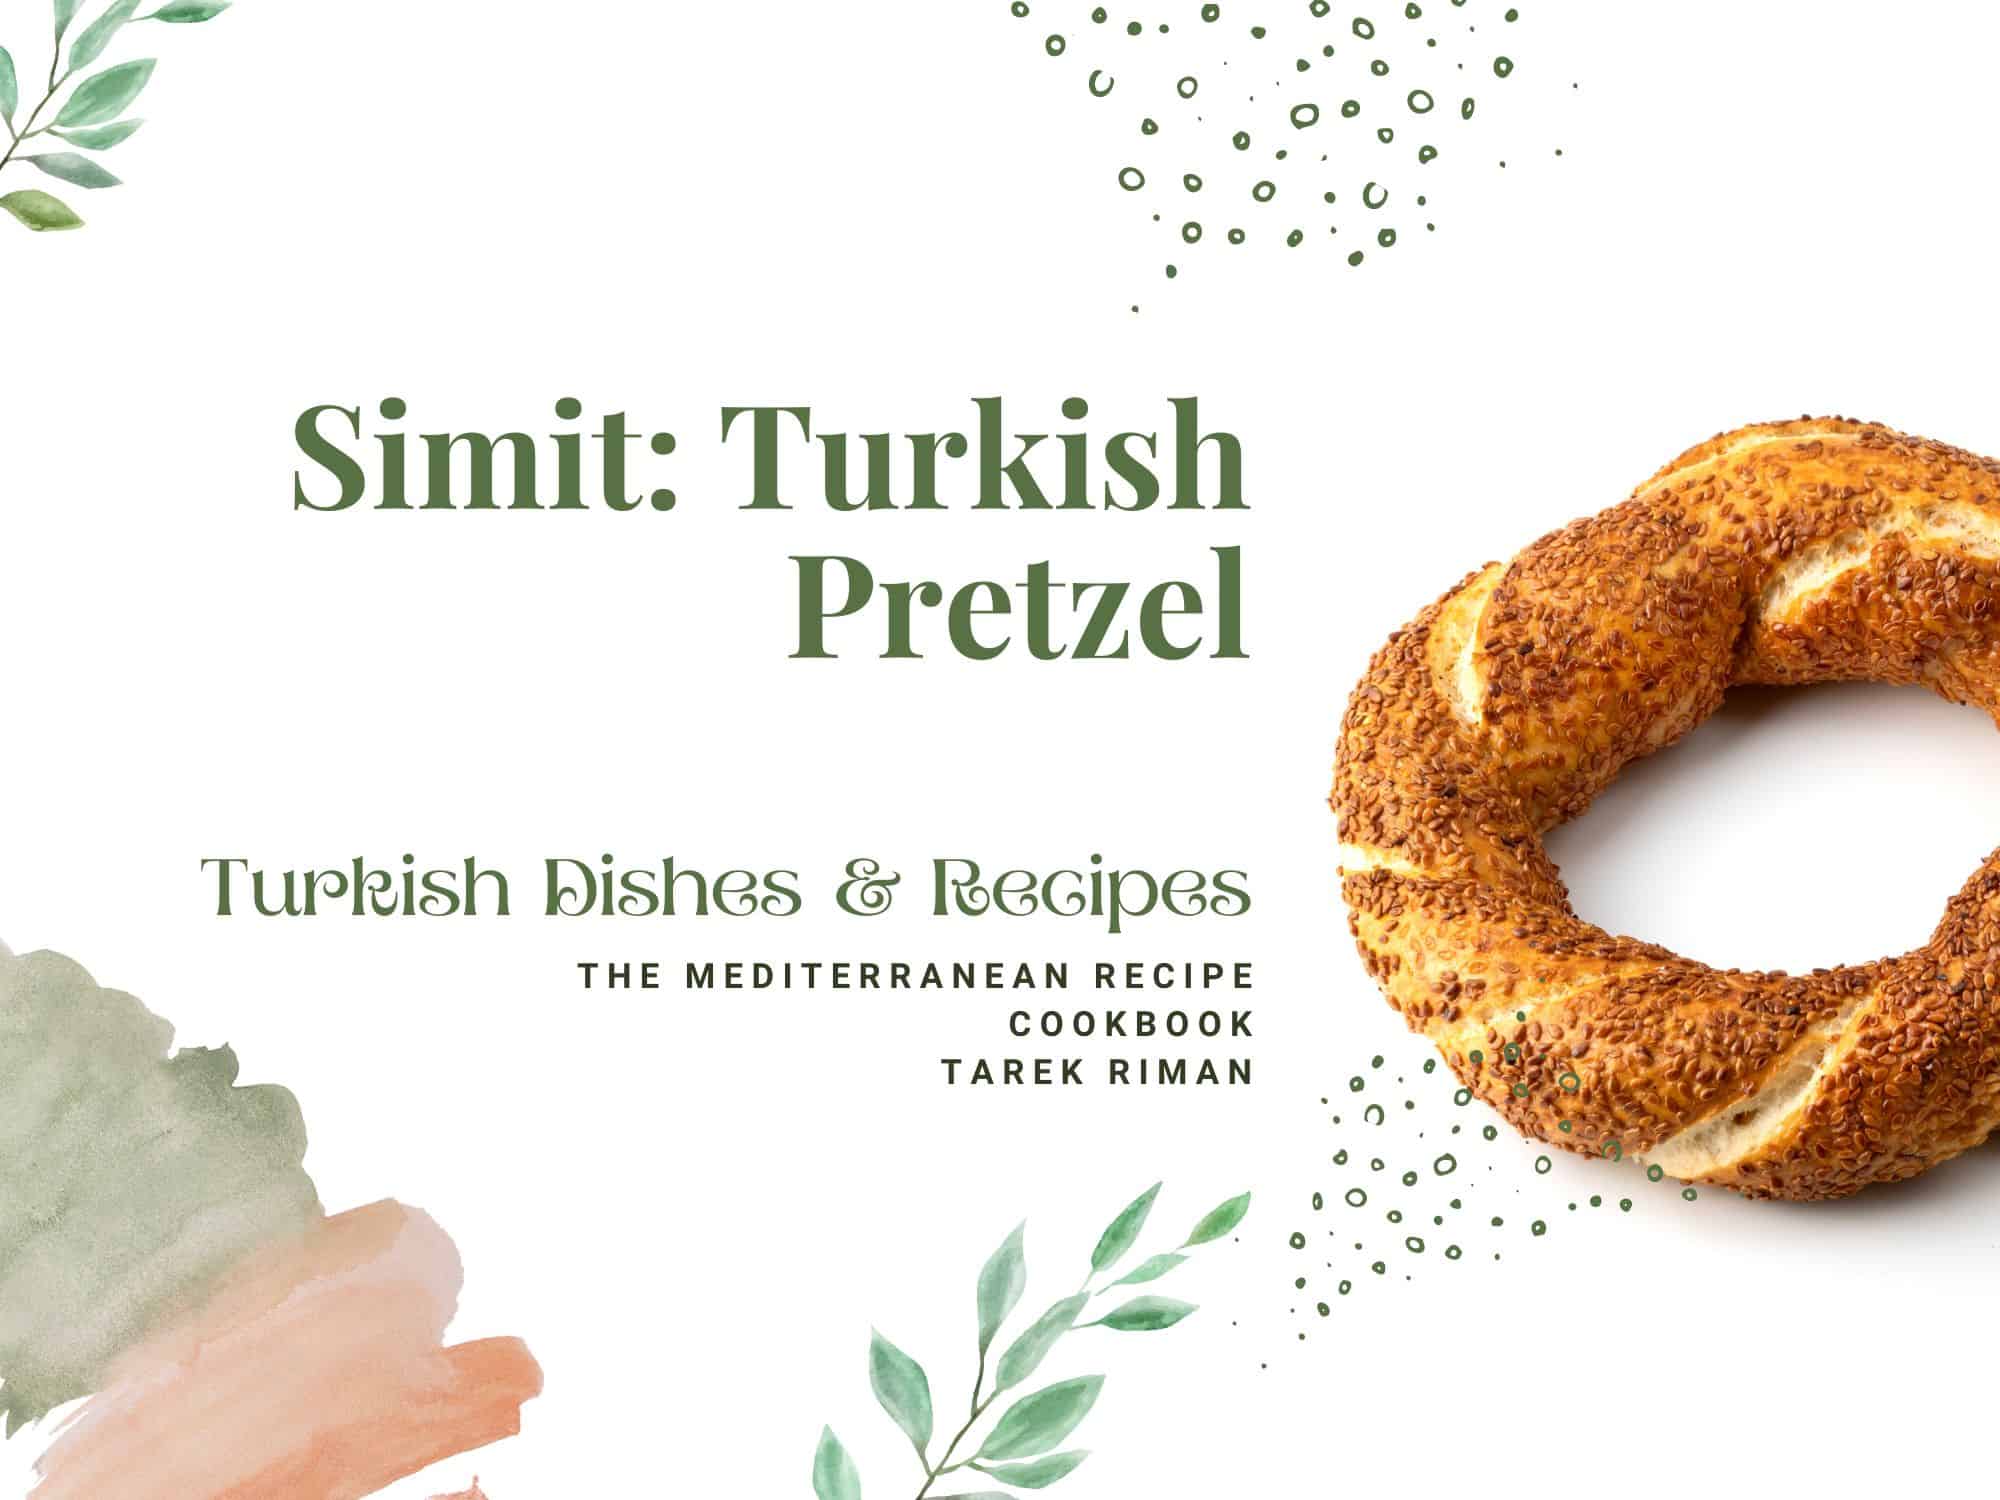 Simit: Turkish Pretzel - Turkish Dishes & Recipes